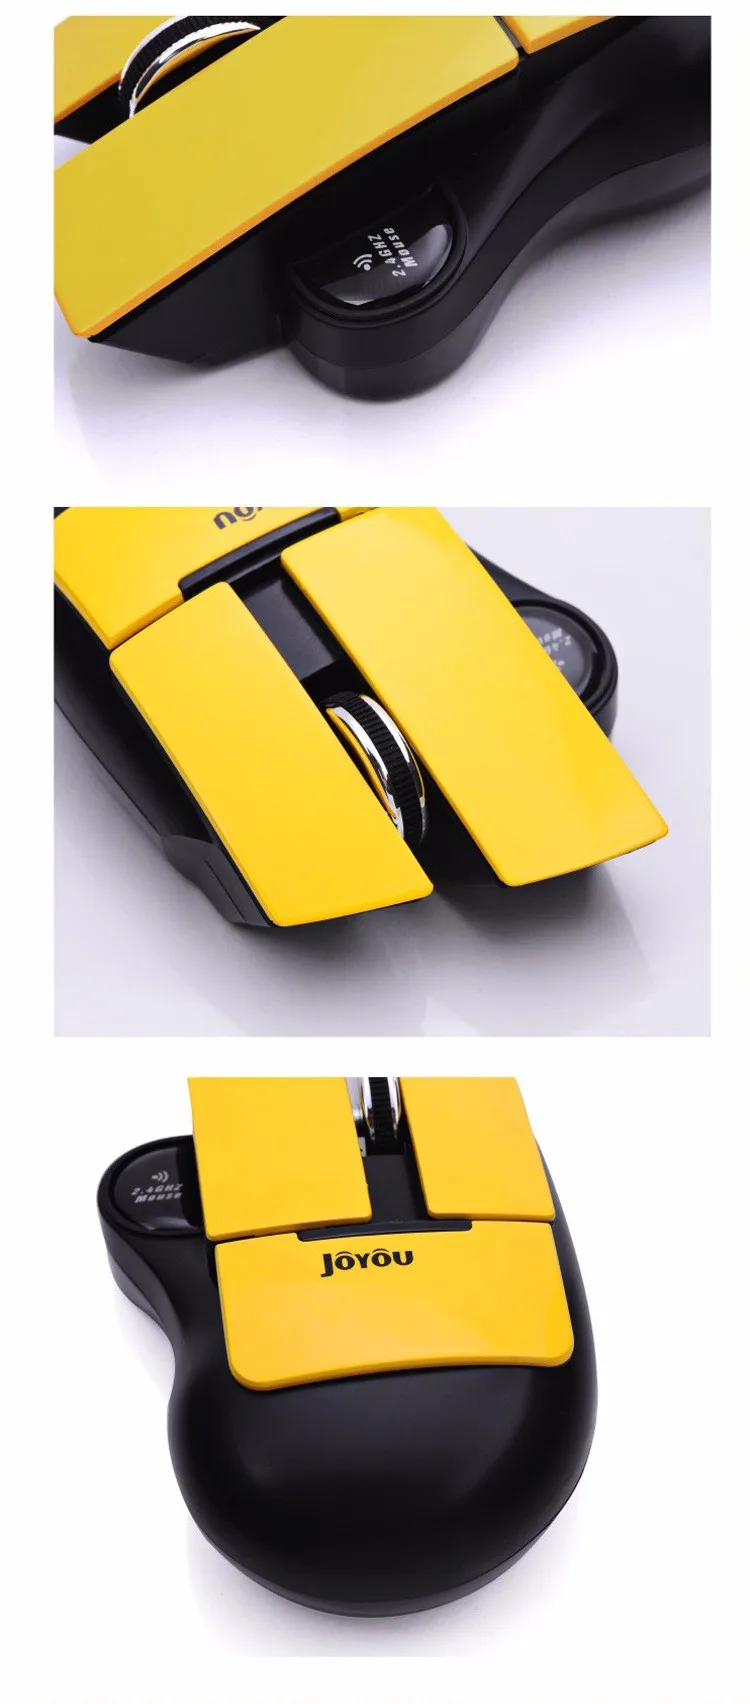 Горячая Новые Трансформеры стиль 2,4G Беспроводная 1800 dpi USB игровая мышь Мыши для MacBook ноутбук компьютерная мышь